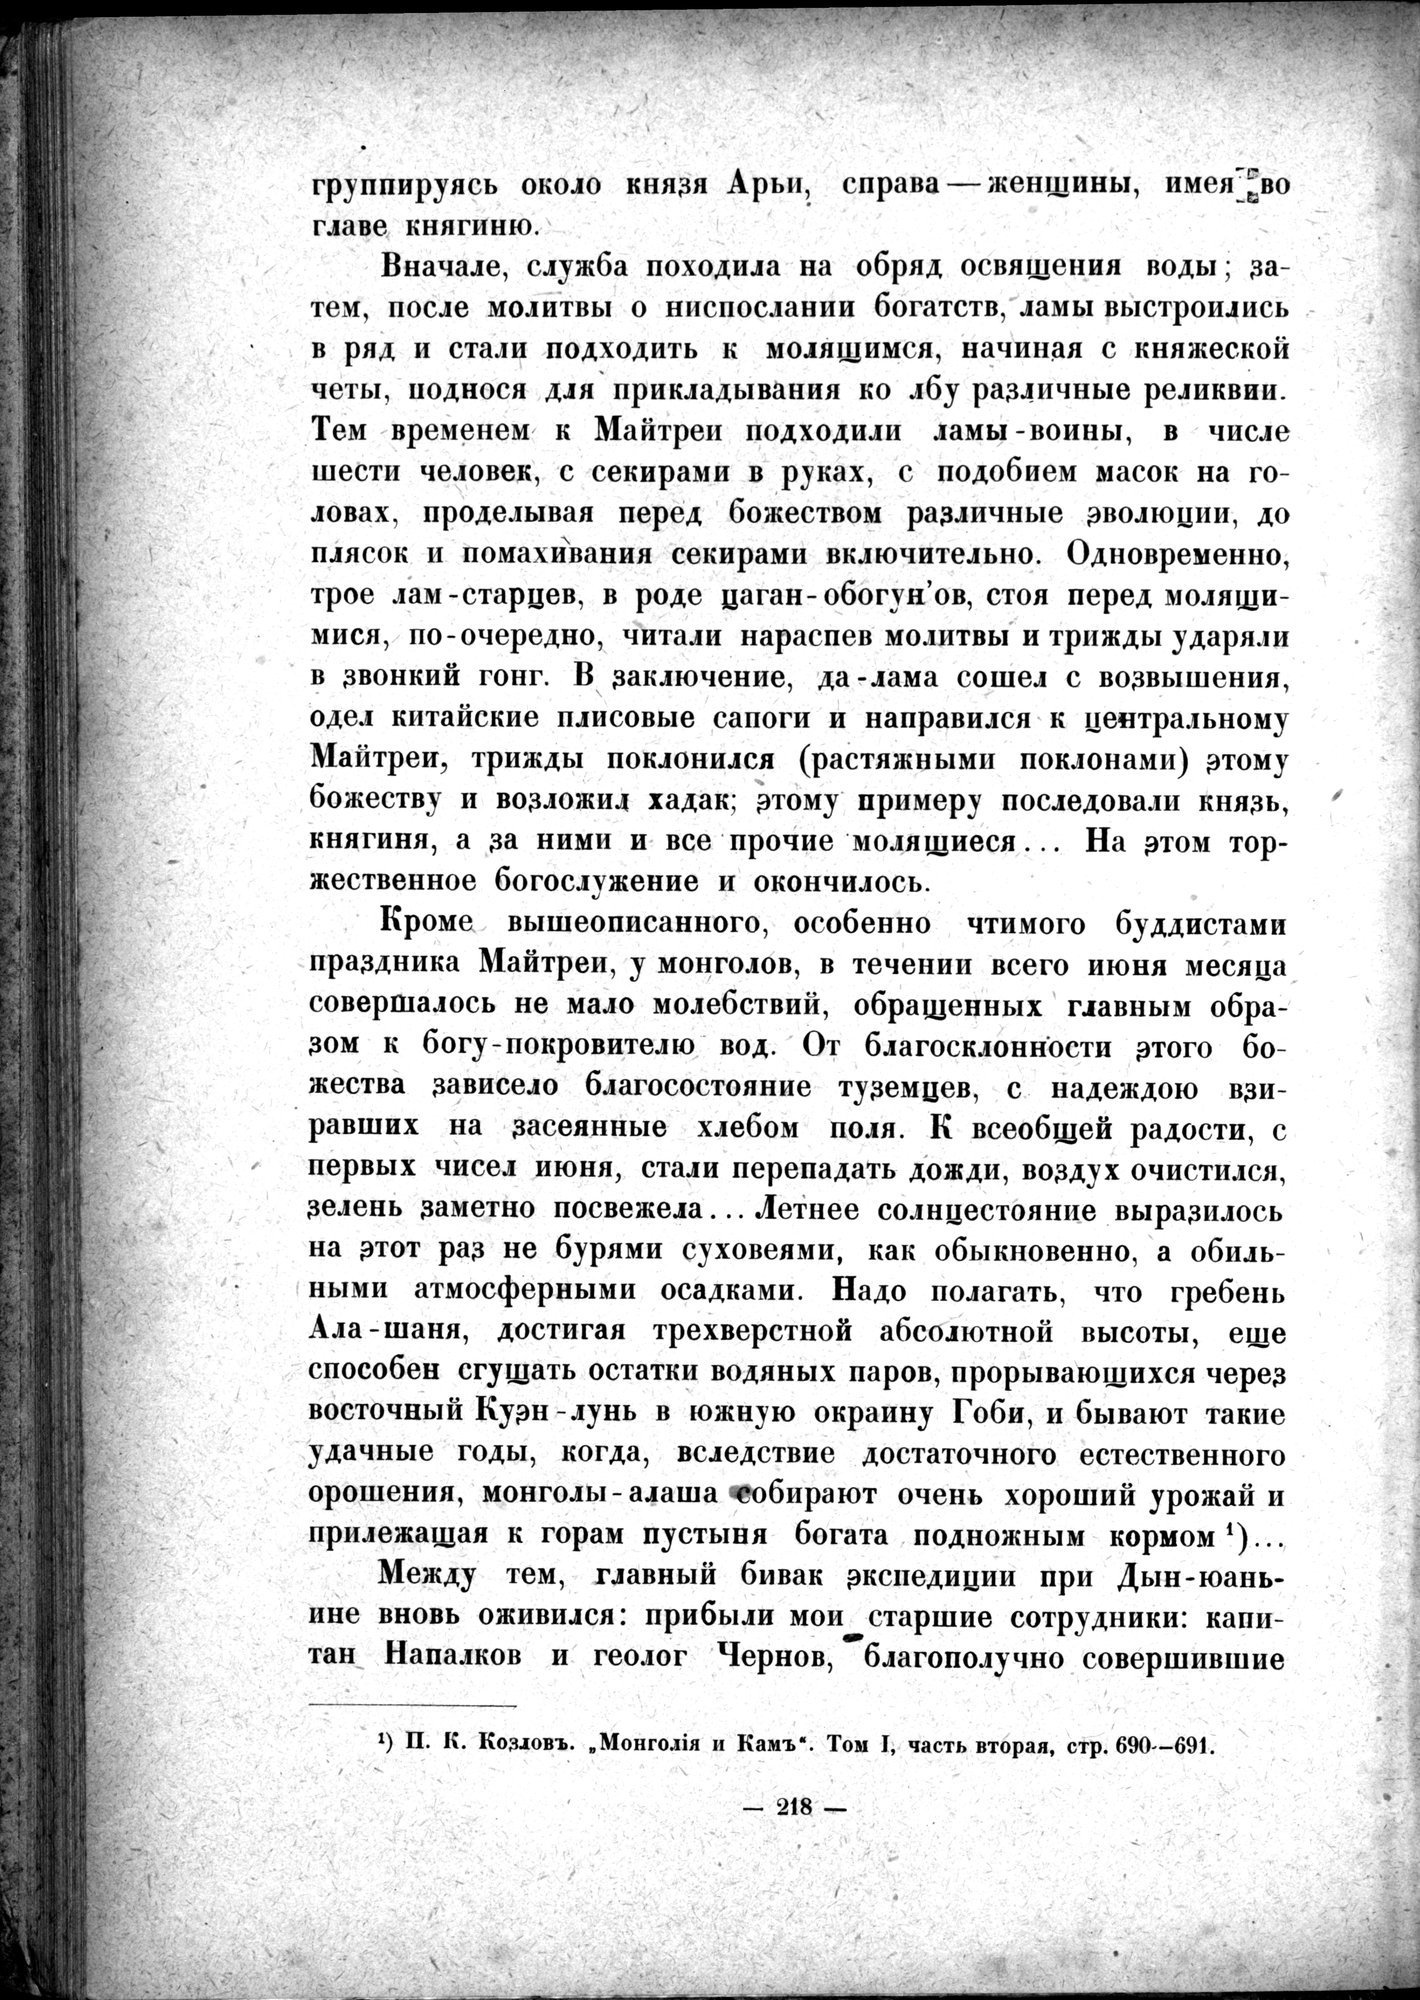 Mongoliya i Amdo i mertby gorod Khara-Khoto : vol.1 / 262 ページ（白黒高解像度画像）